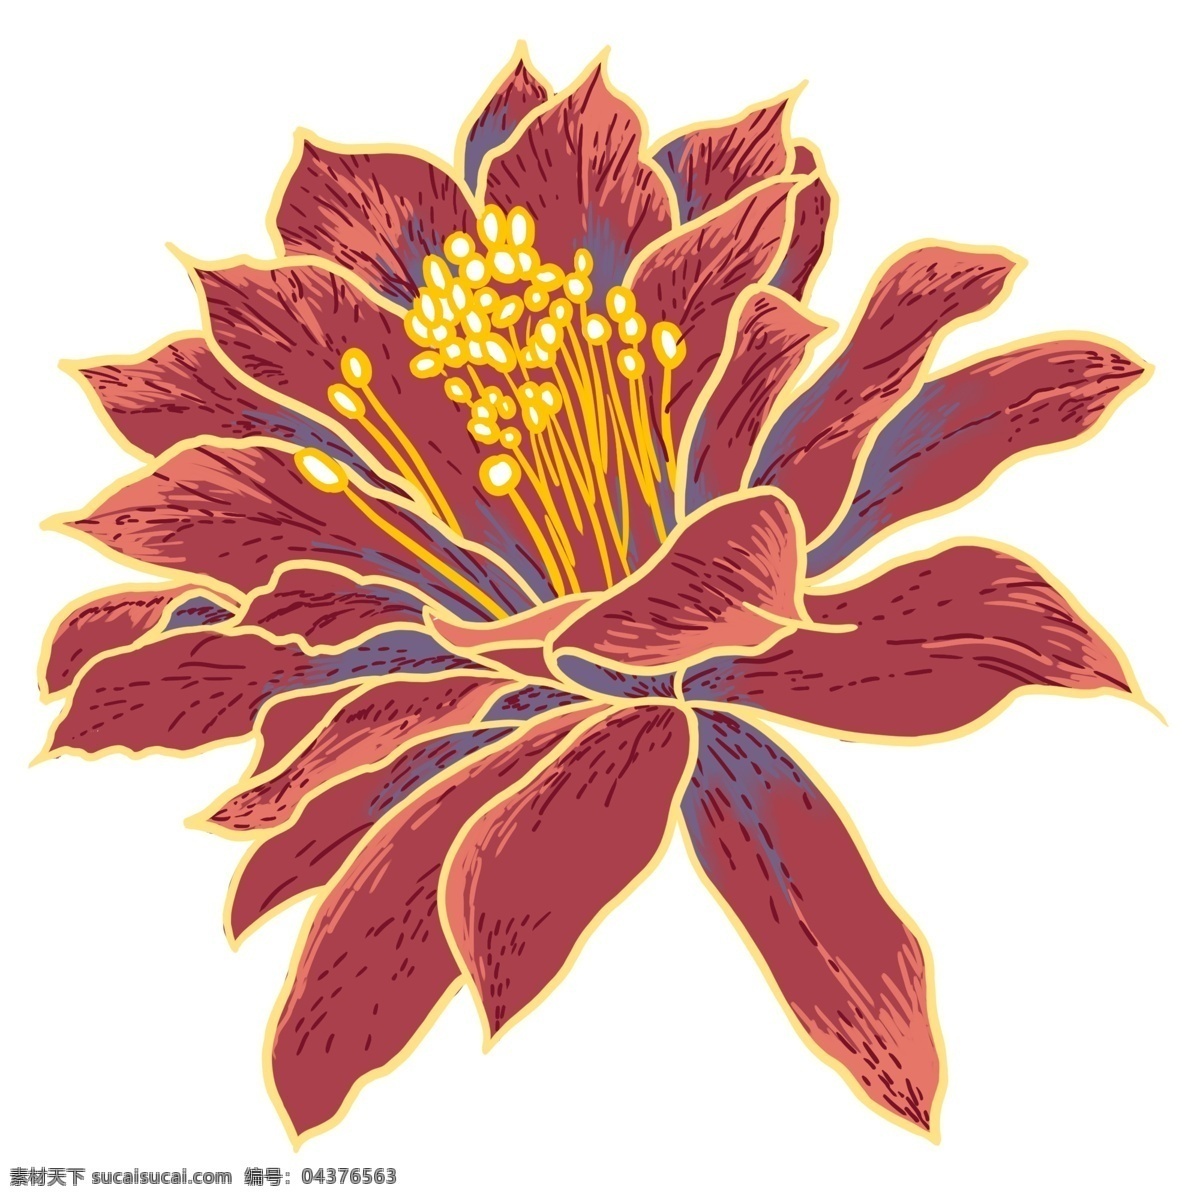 暗红色 花朵 原创 元素 中国风 工笔彩绘 金色花蕊 重瓣